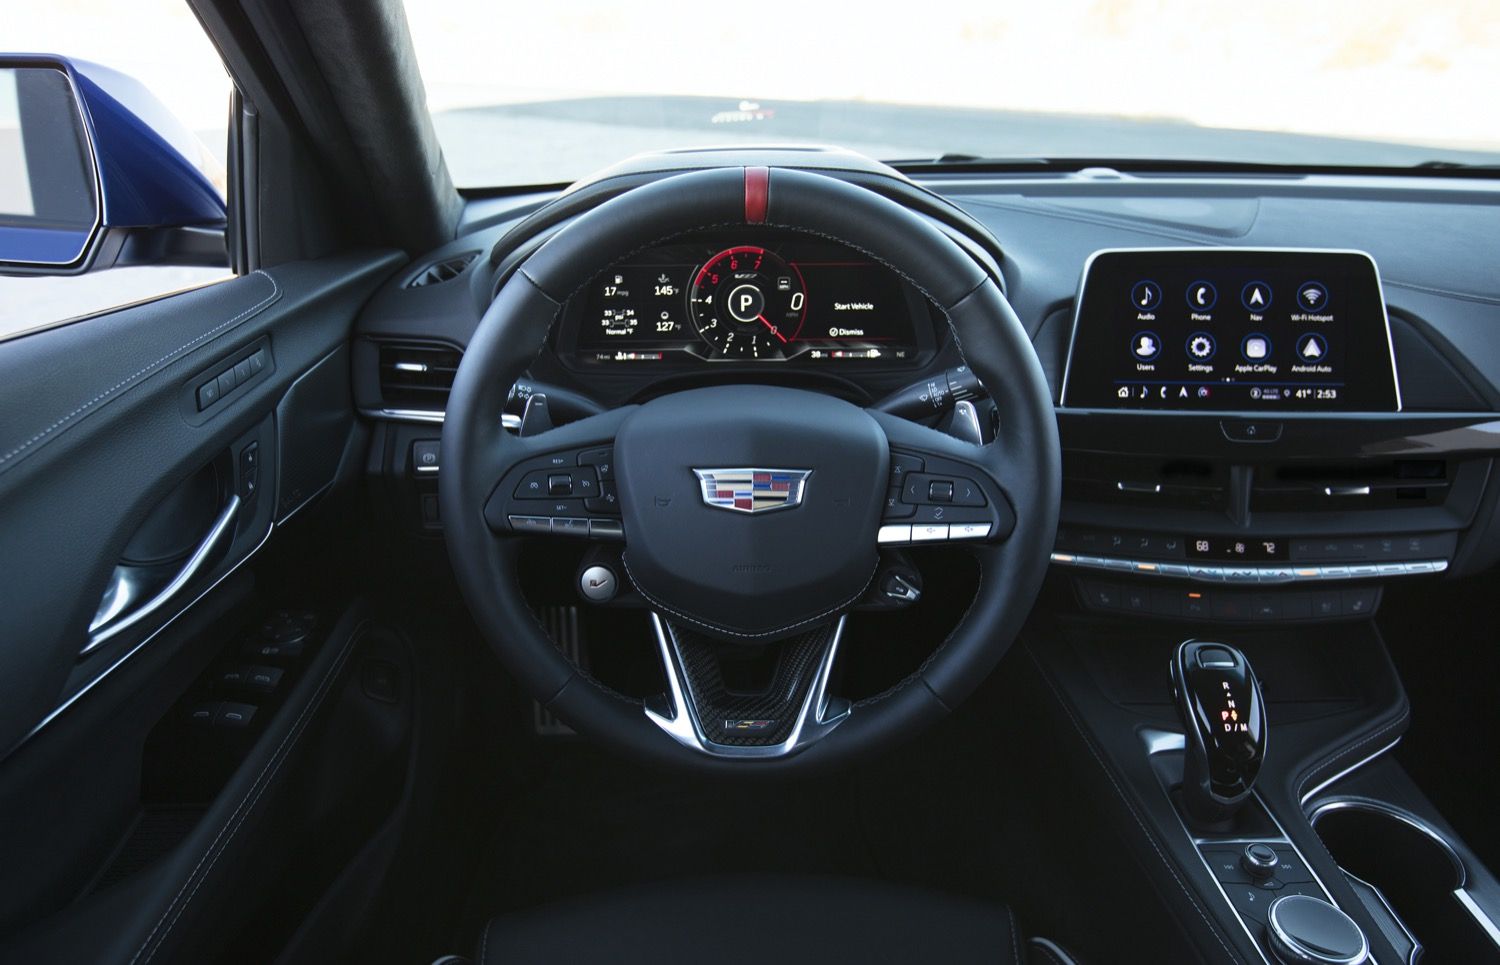 2022-Cadillac-CT4-V-Blackwing-Interior-Level-2-001-Jet-Black-cockpit-steering-wheel-with-carbon-fiber-trim-and-red-stripe-digital-gauge-cluster-center-stack